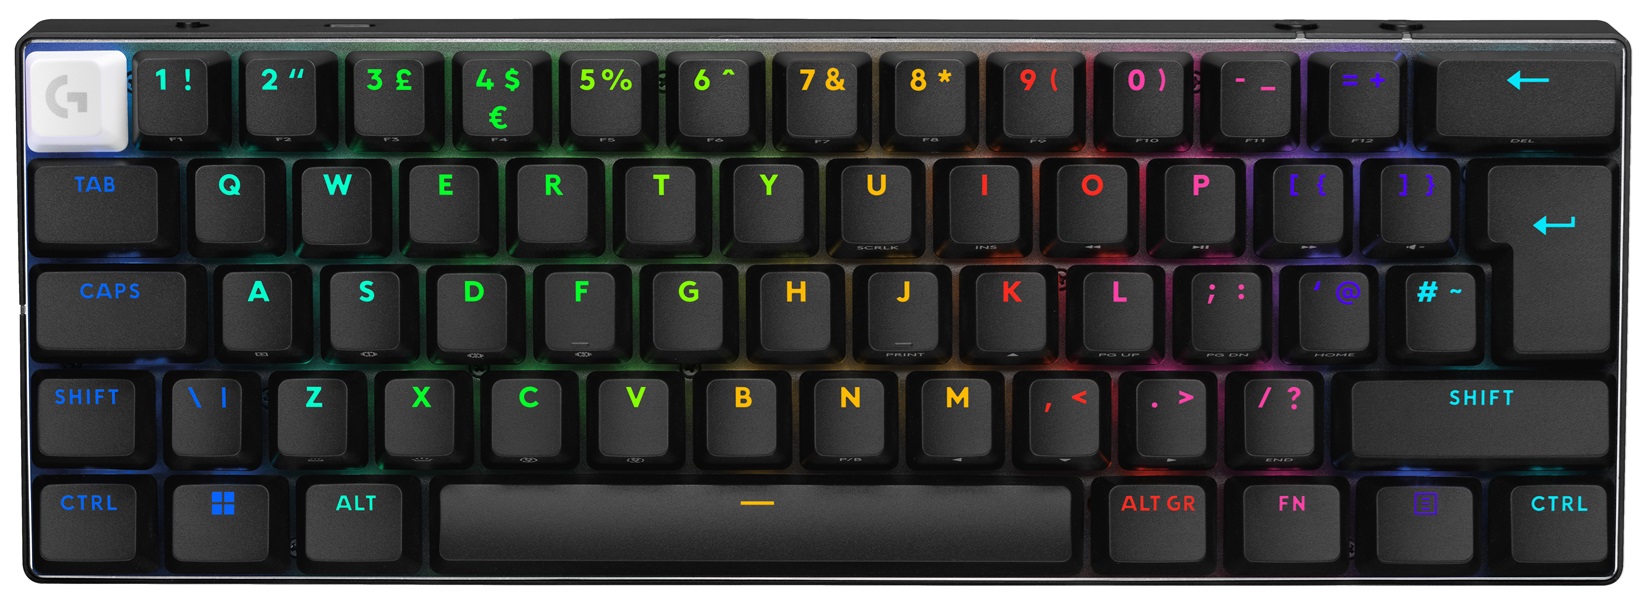 LOGITECH G prezentuje gamingową klawiaturę PRO X 60 z technologią KEYCONTROL